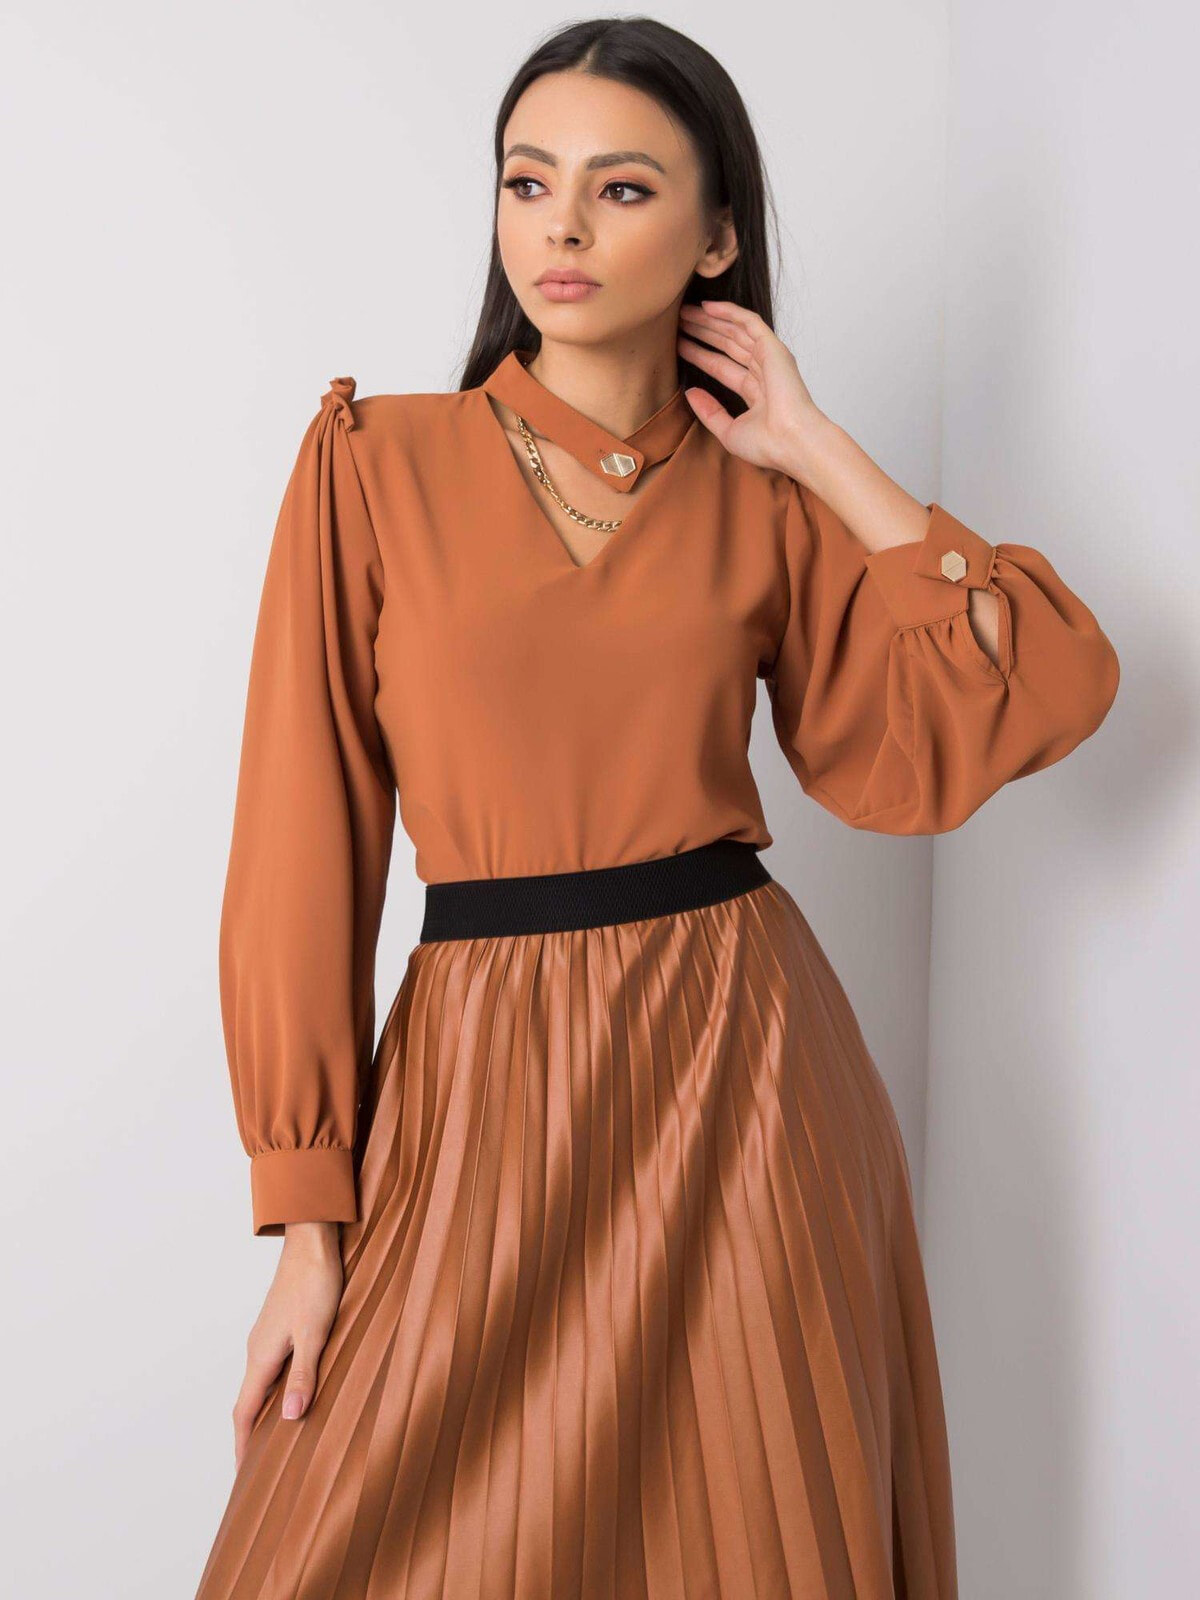 Женская блузка коричневая с длинным рукавом фонариком Factory Price